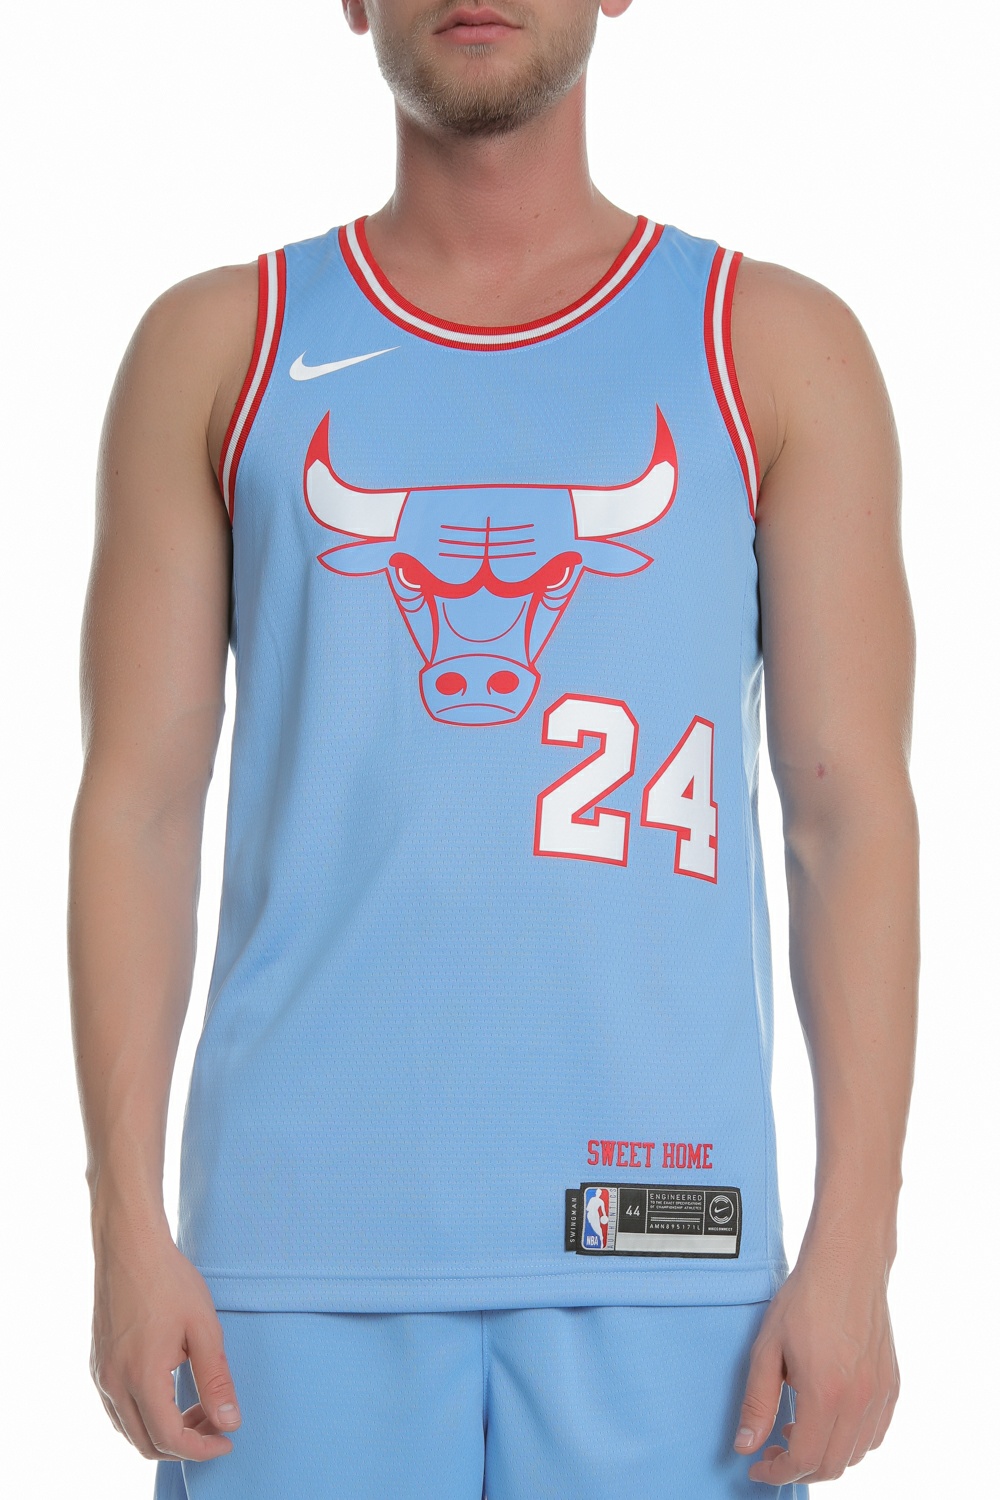 Ανδρικά/Ρούχα/Αθλητικά/T-shirt NIKE - Ανδρική αθλητική φανέλα NIKE NBA i Markkanen Bulls γαλάζιο